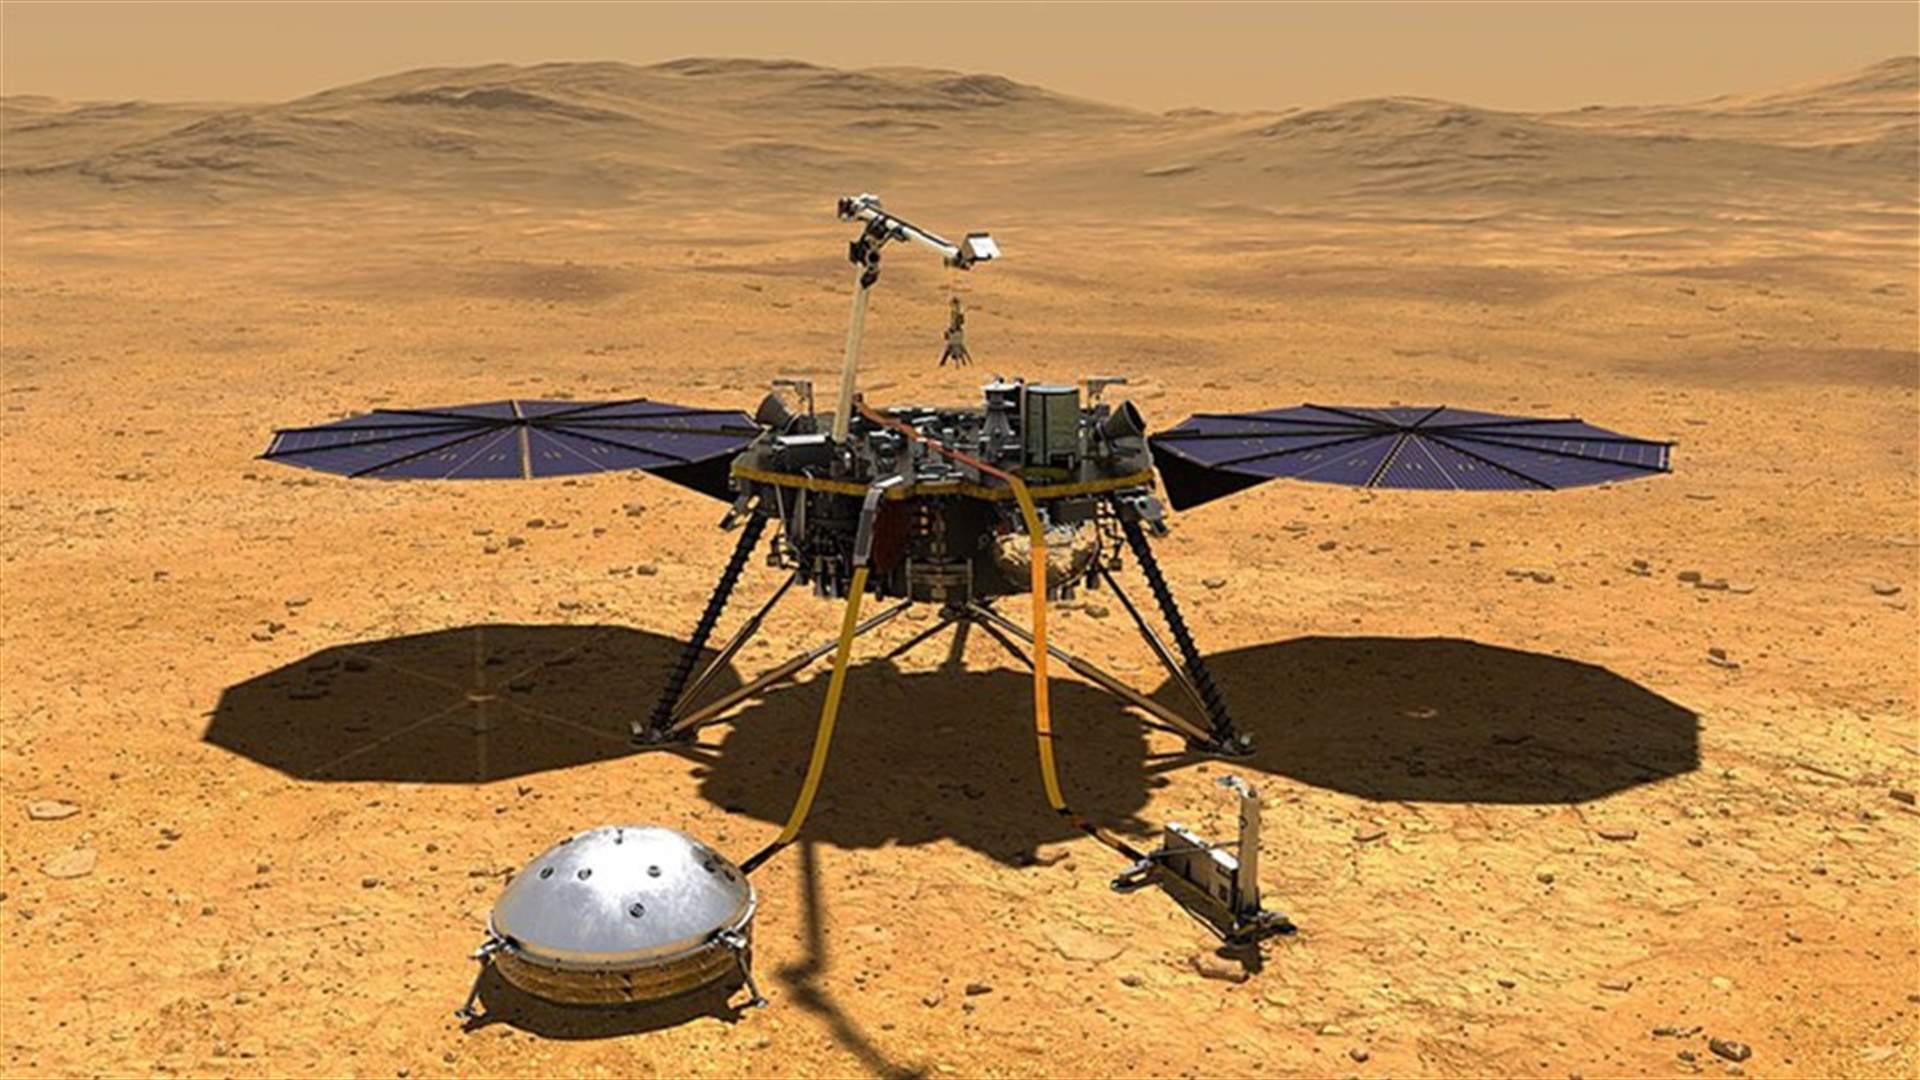 للمساعدة في عملية نقل العينات إلى الأرض عام 2033... ناسا ترسل مروحيتين إضافيتين إلى المريخ